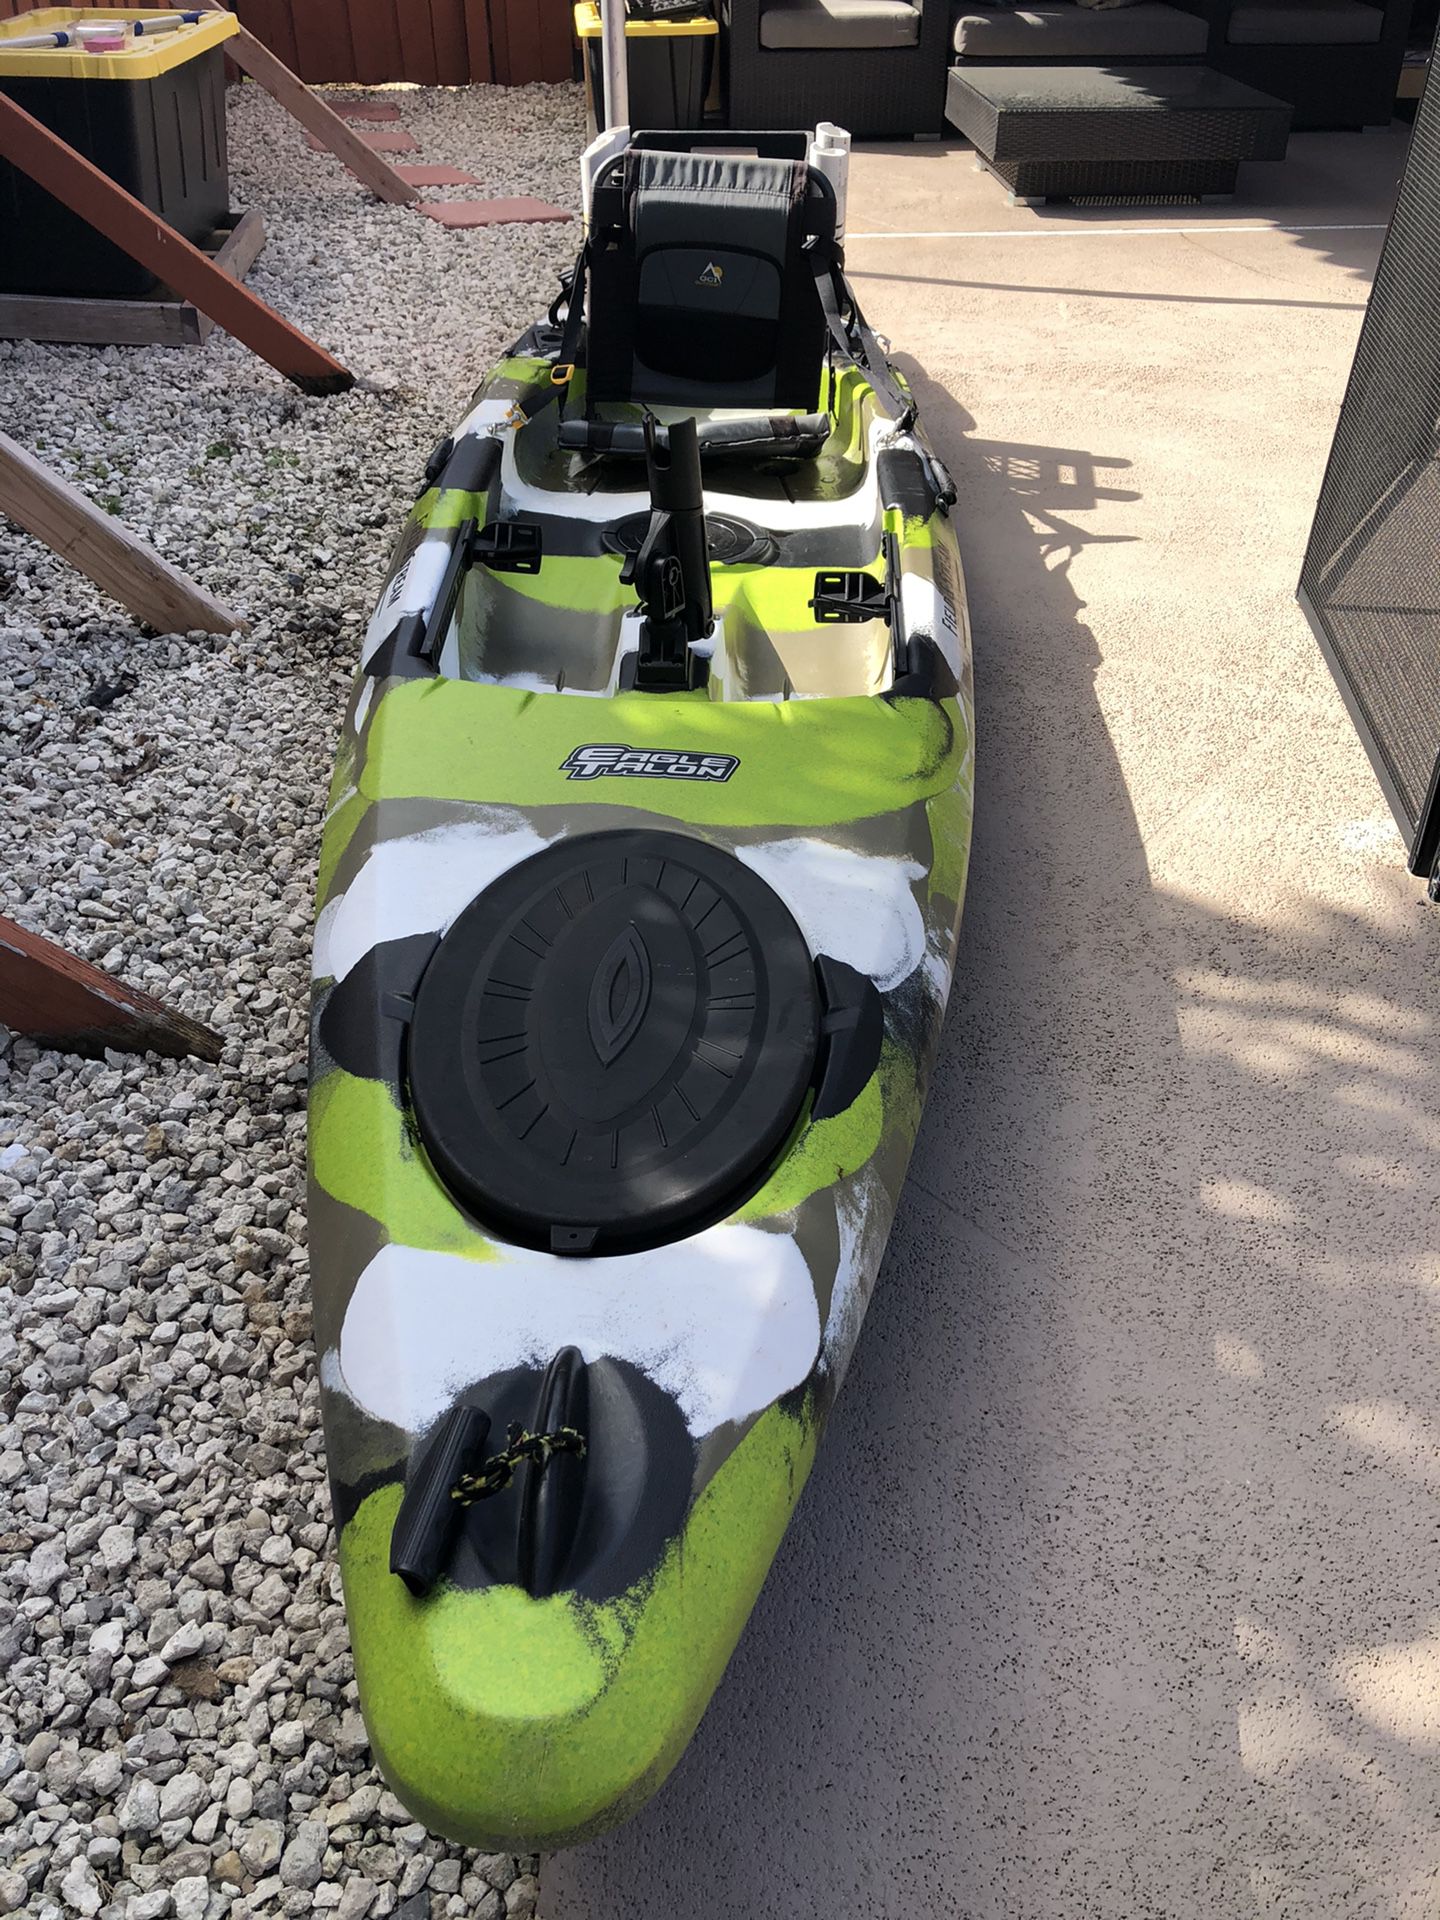 Field & stream eagle talon 12, great kayak +extras ready to go fishing